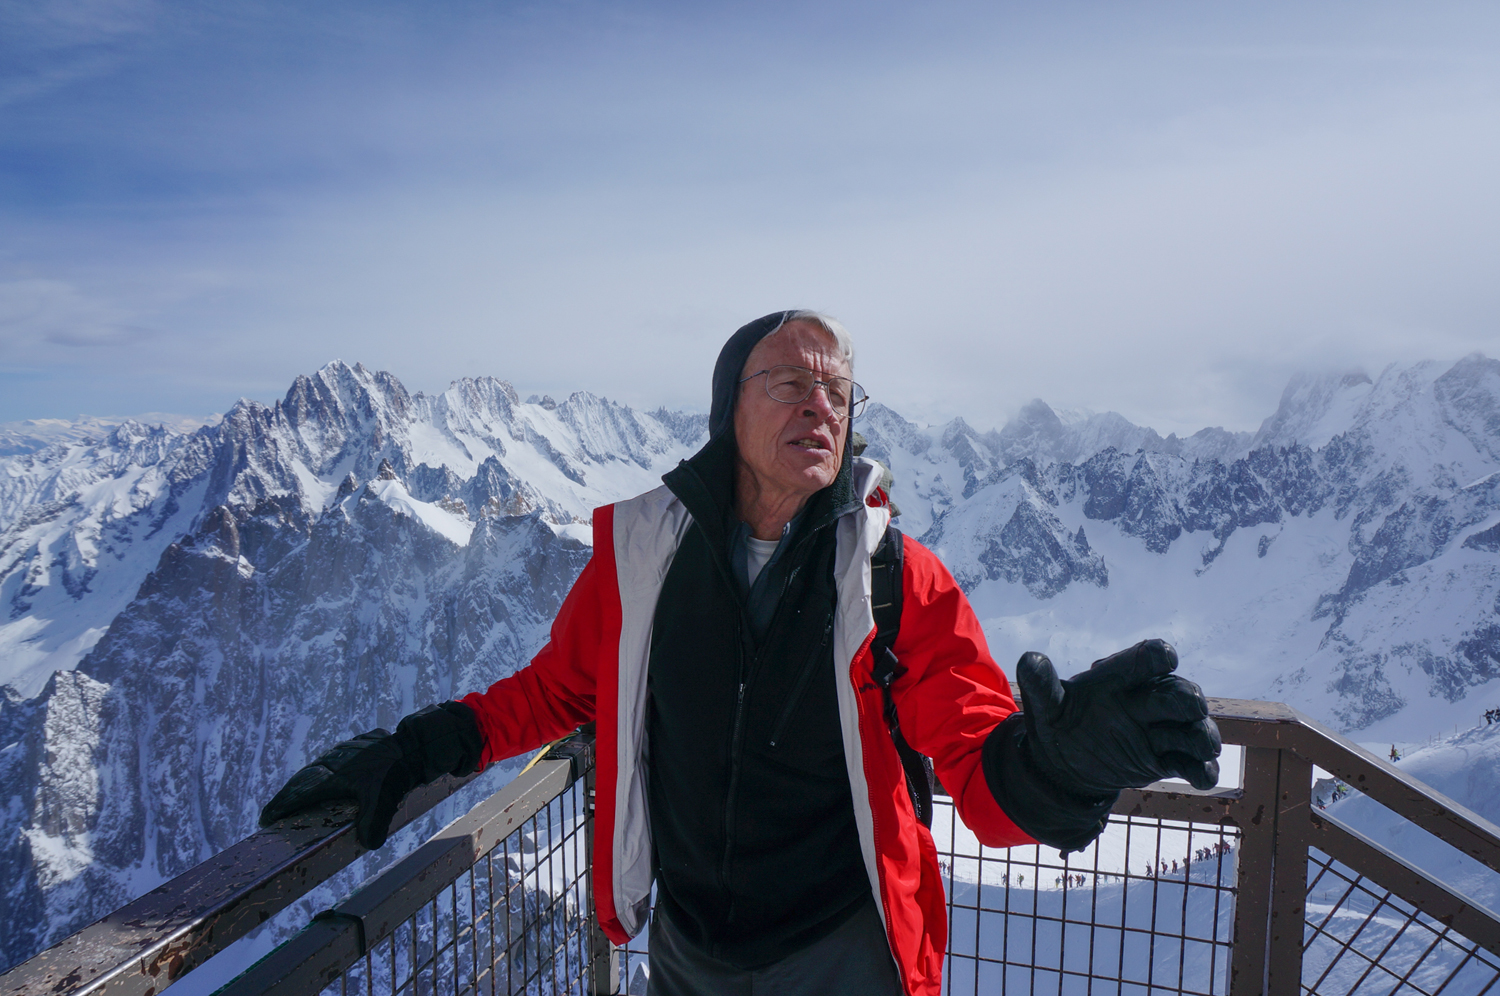 американский альпинист Джордж Лоу (George Lowe) - председатель жюри премии "Золотой Ледоруб" 2014 (Piolets d